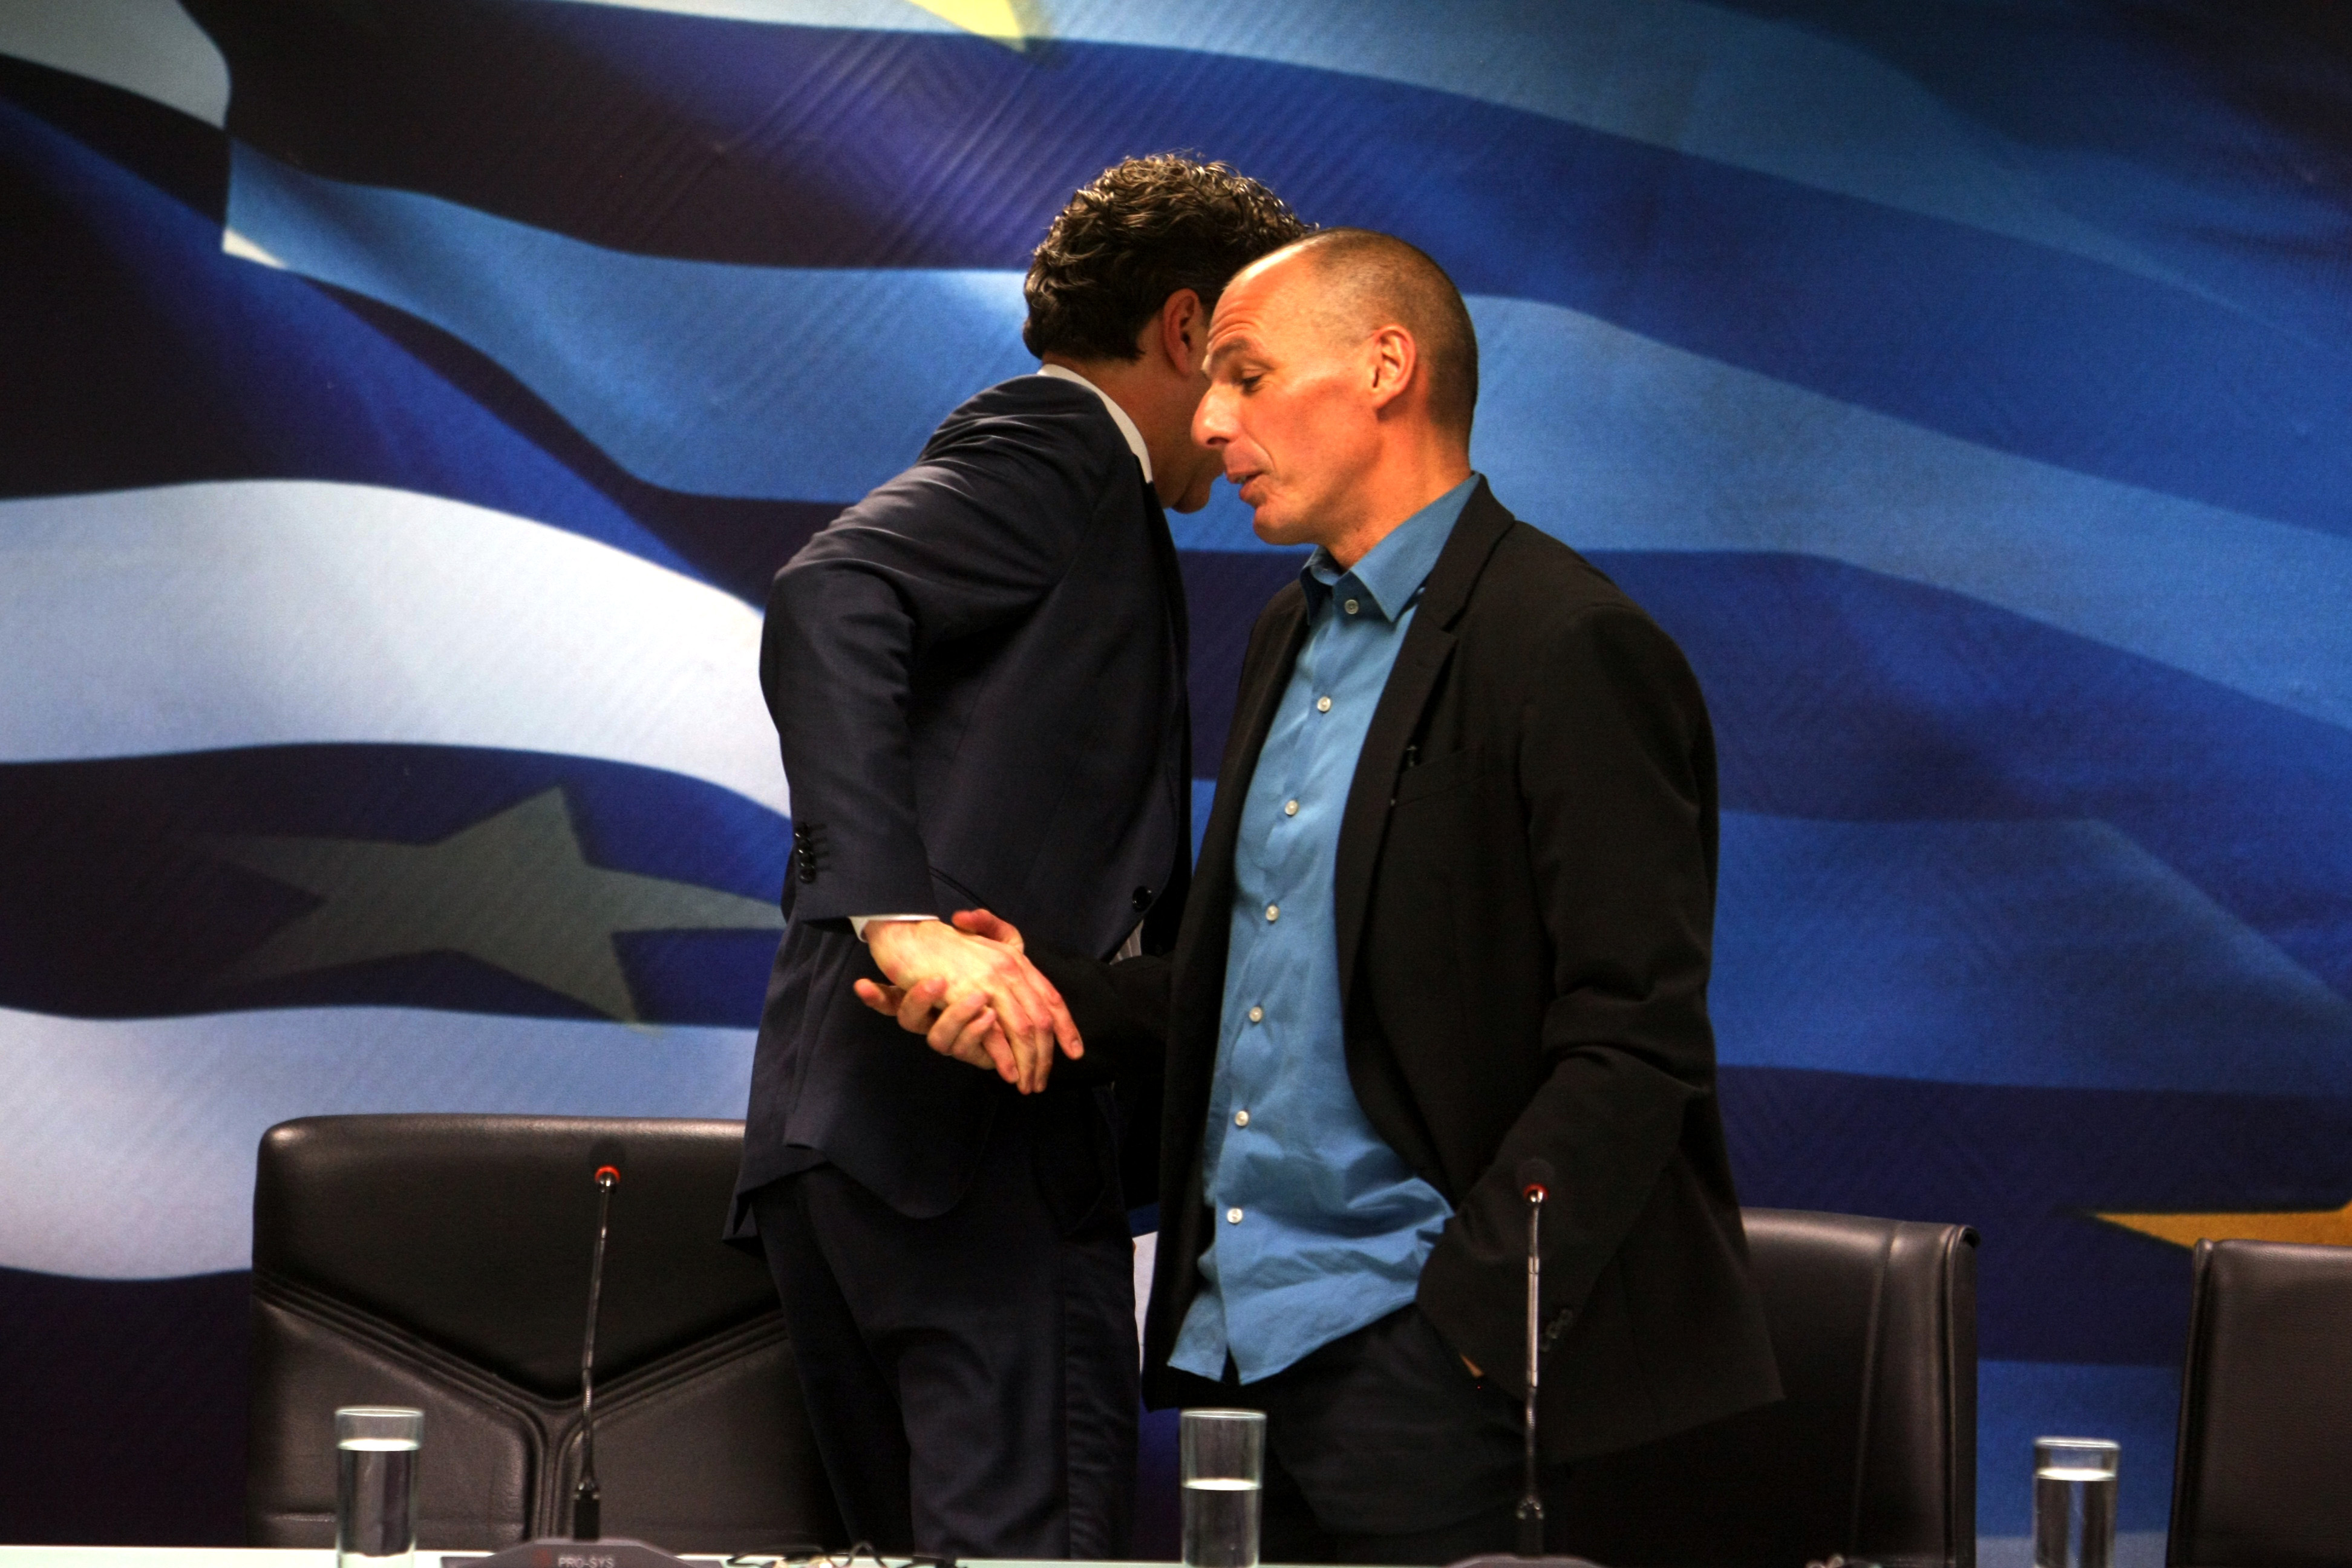 Βαρουφάκης: «Δεν θα συνεργαστούμε με την τρόικα» – «Μεταρρυθμίσεις χωρίς φόβο αλλά με πάθος» υποσχέθηκε η Ελλάδα στην Ευρώπη (video)